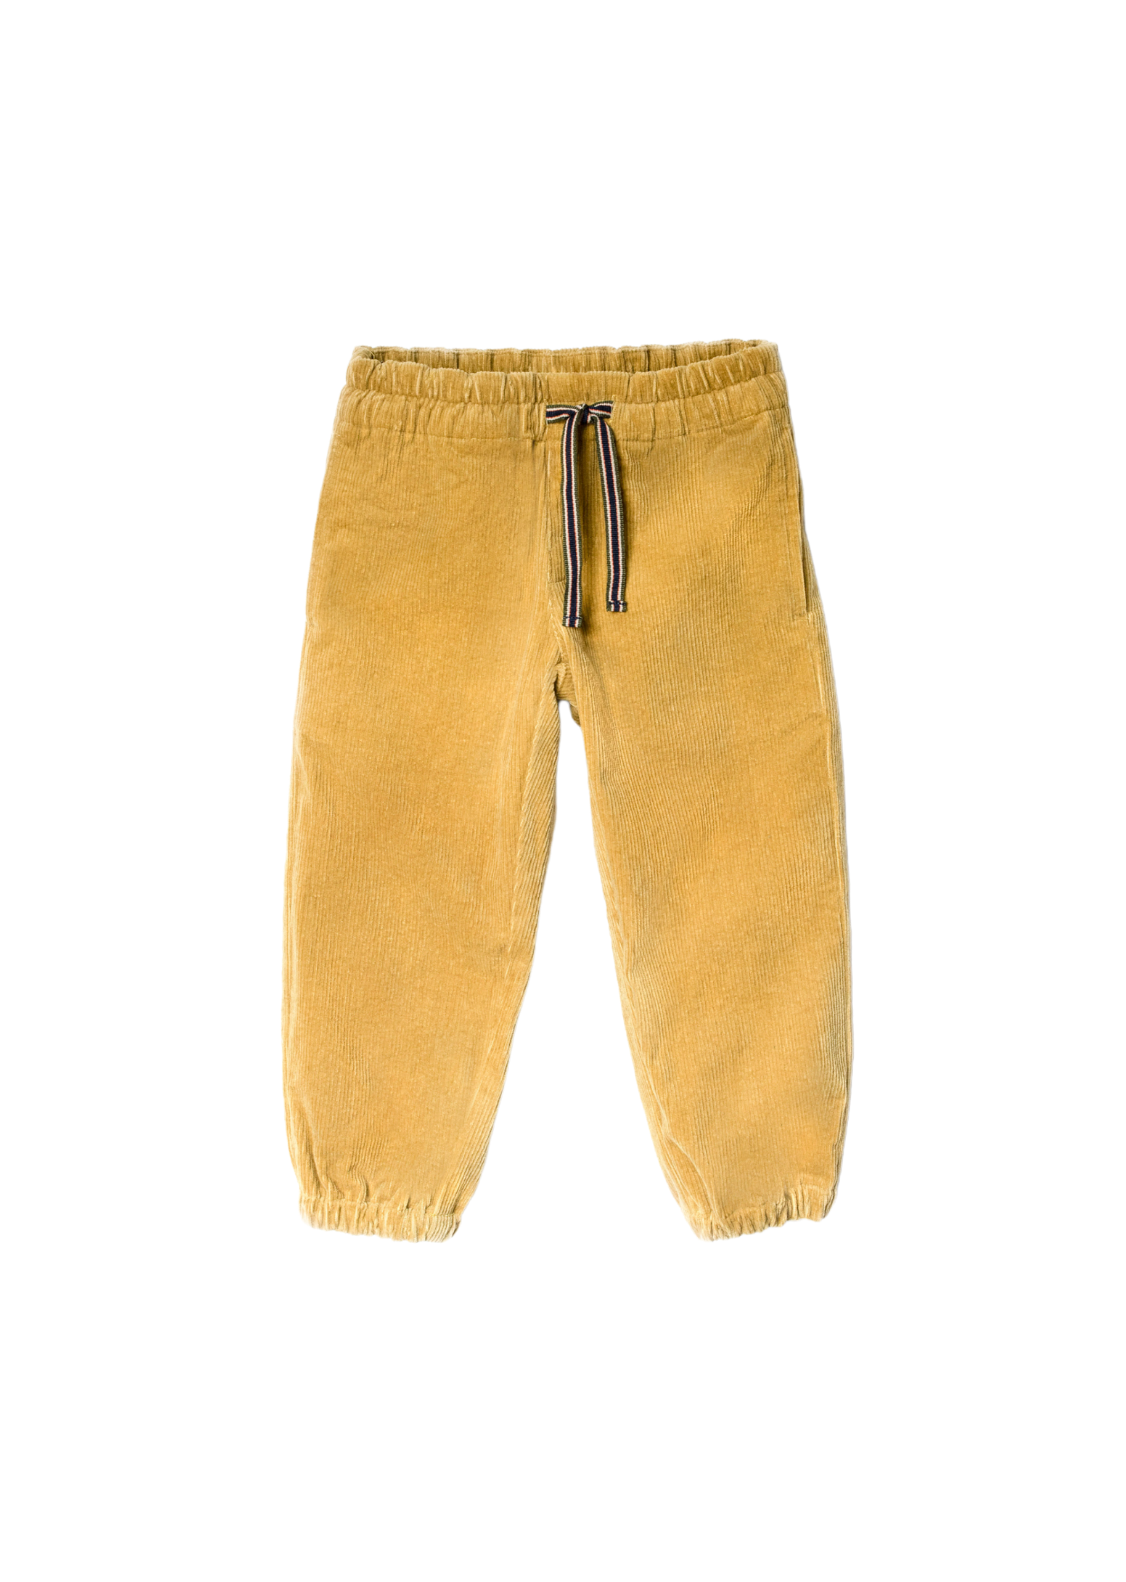 Butterscotch corduroy pants for boys